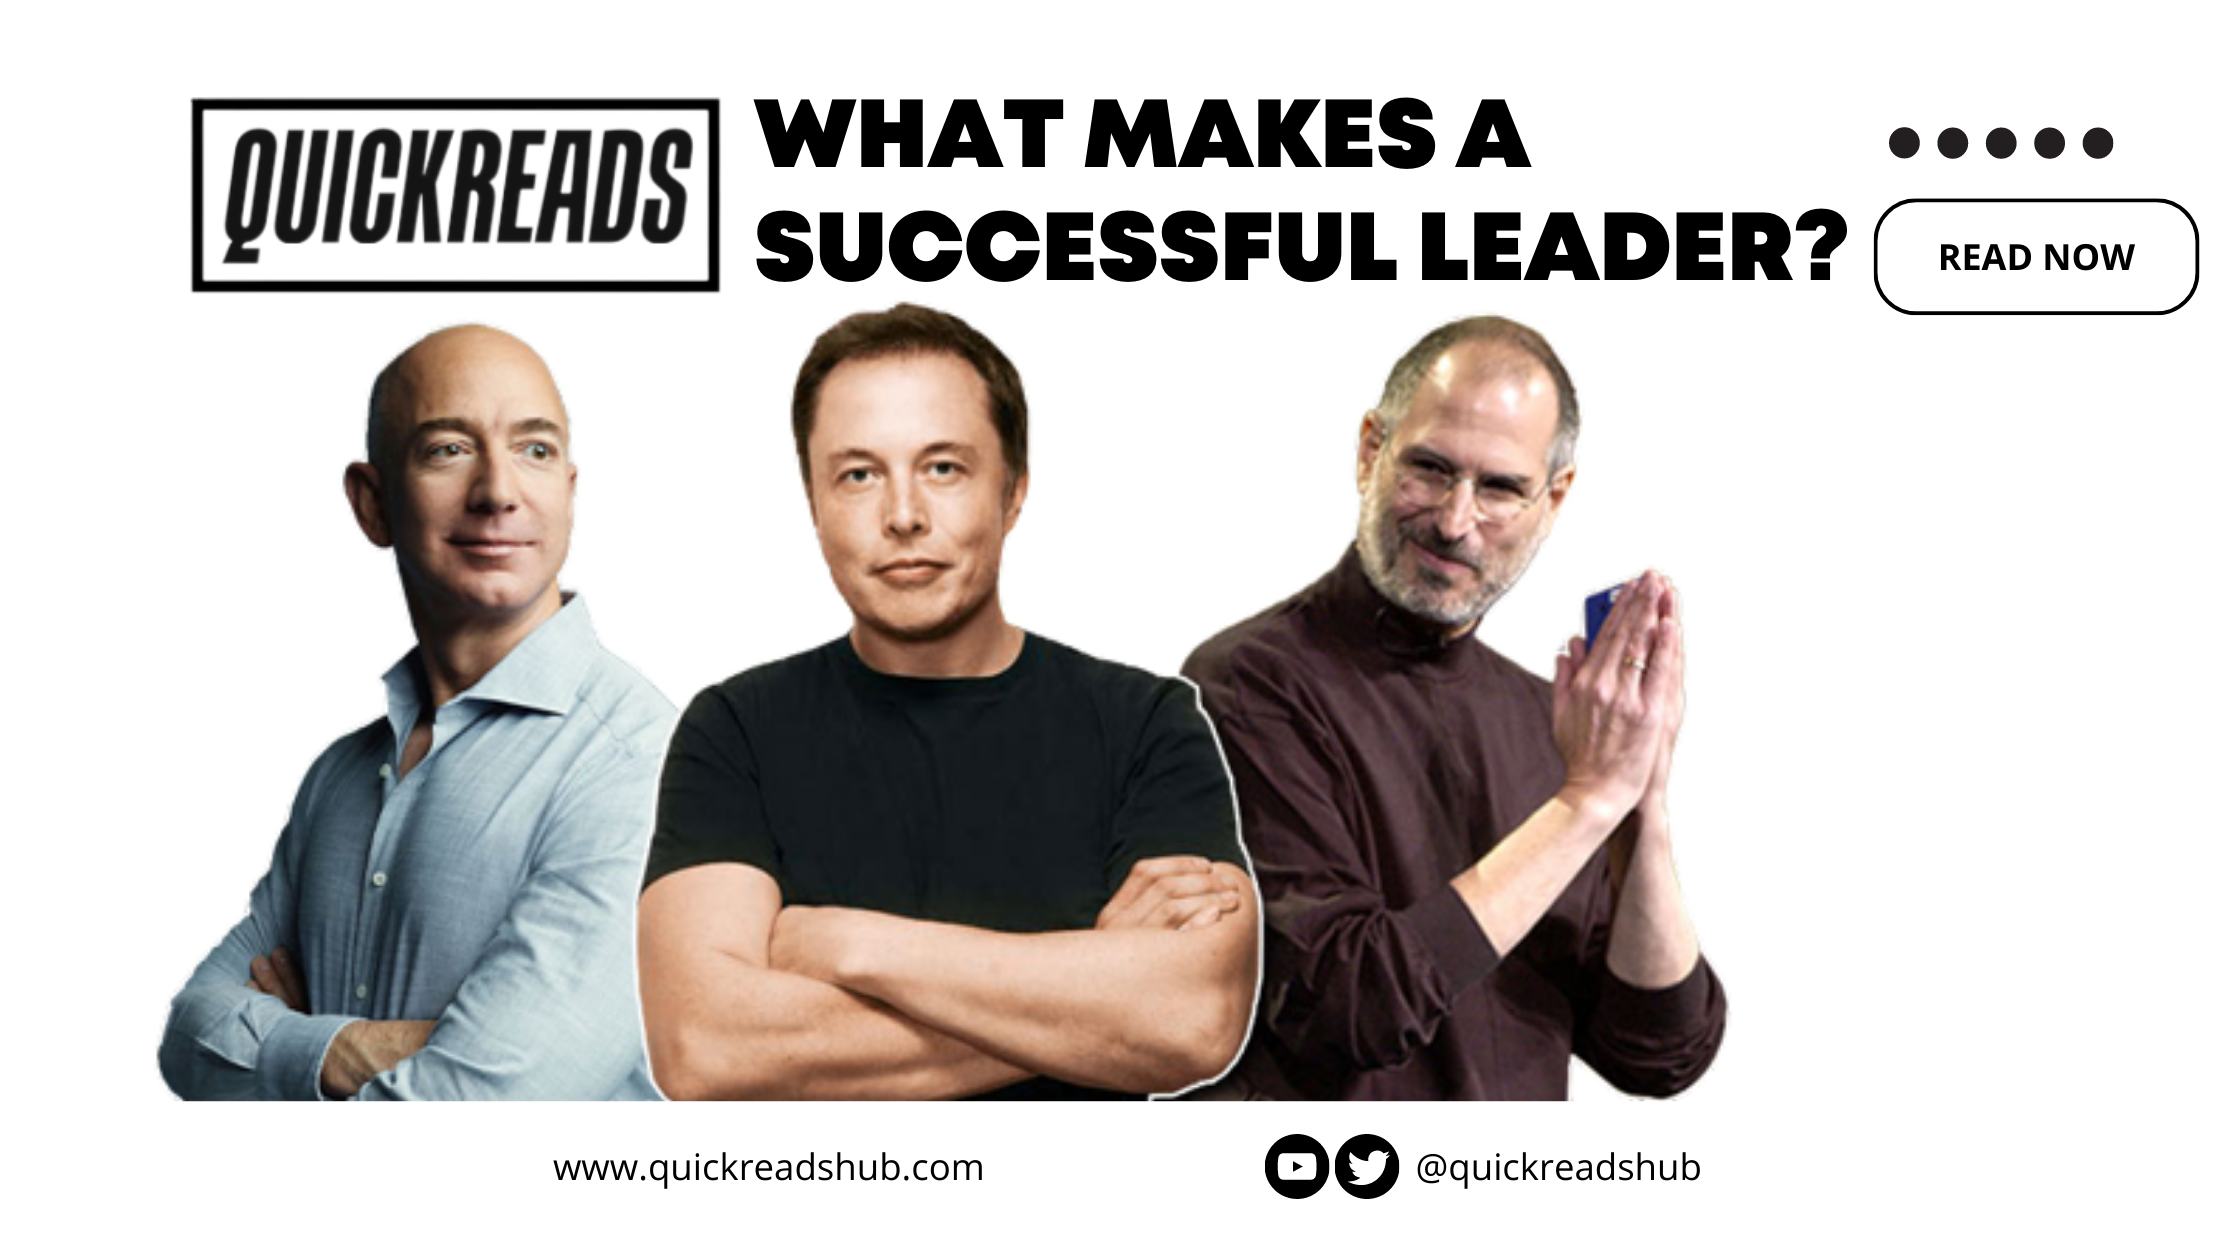 Leadership Traits